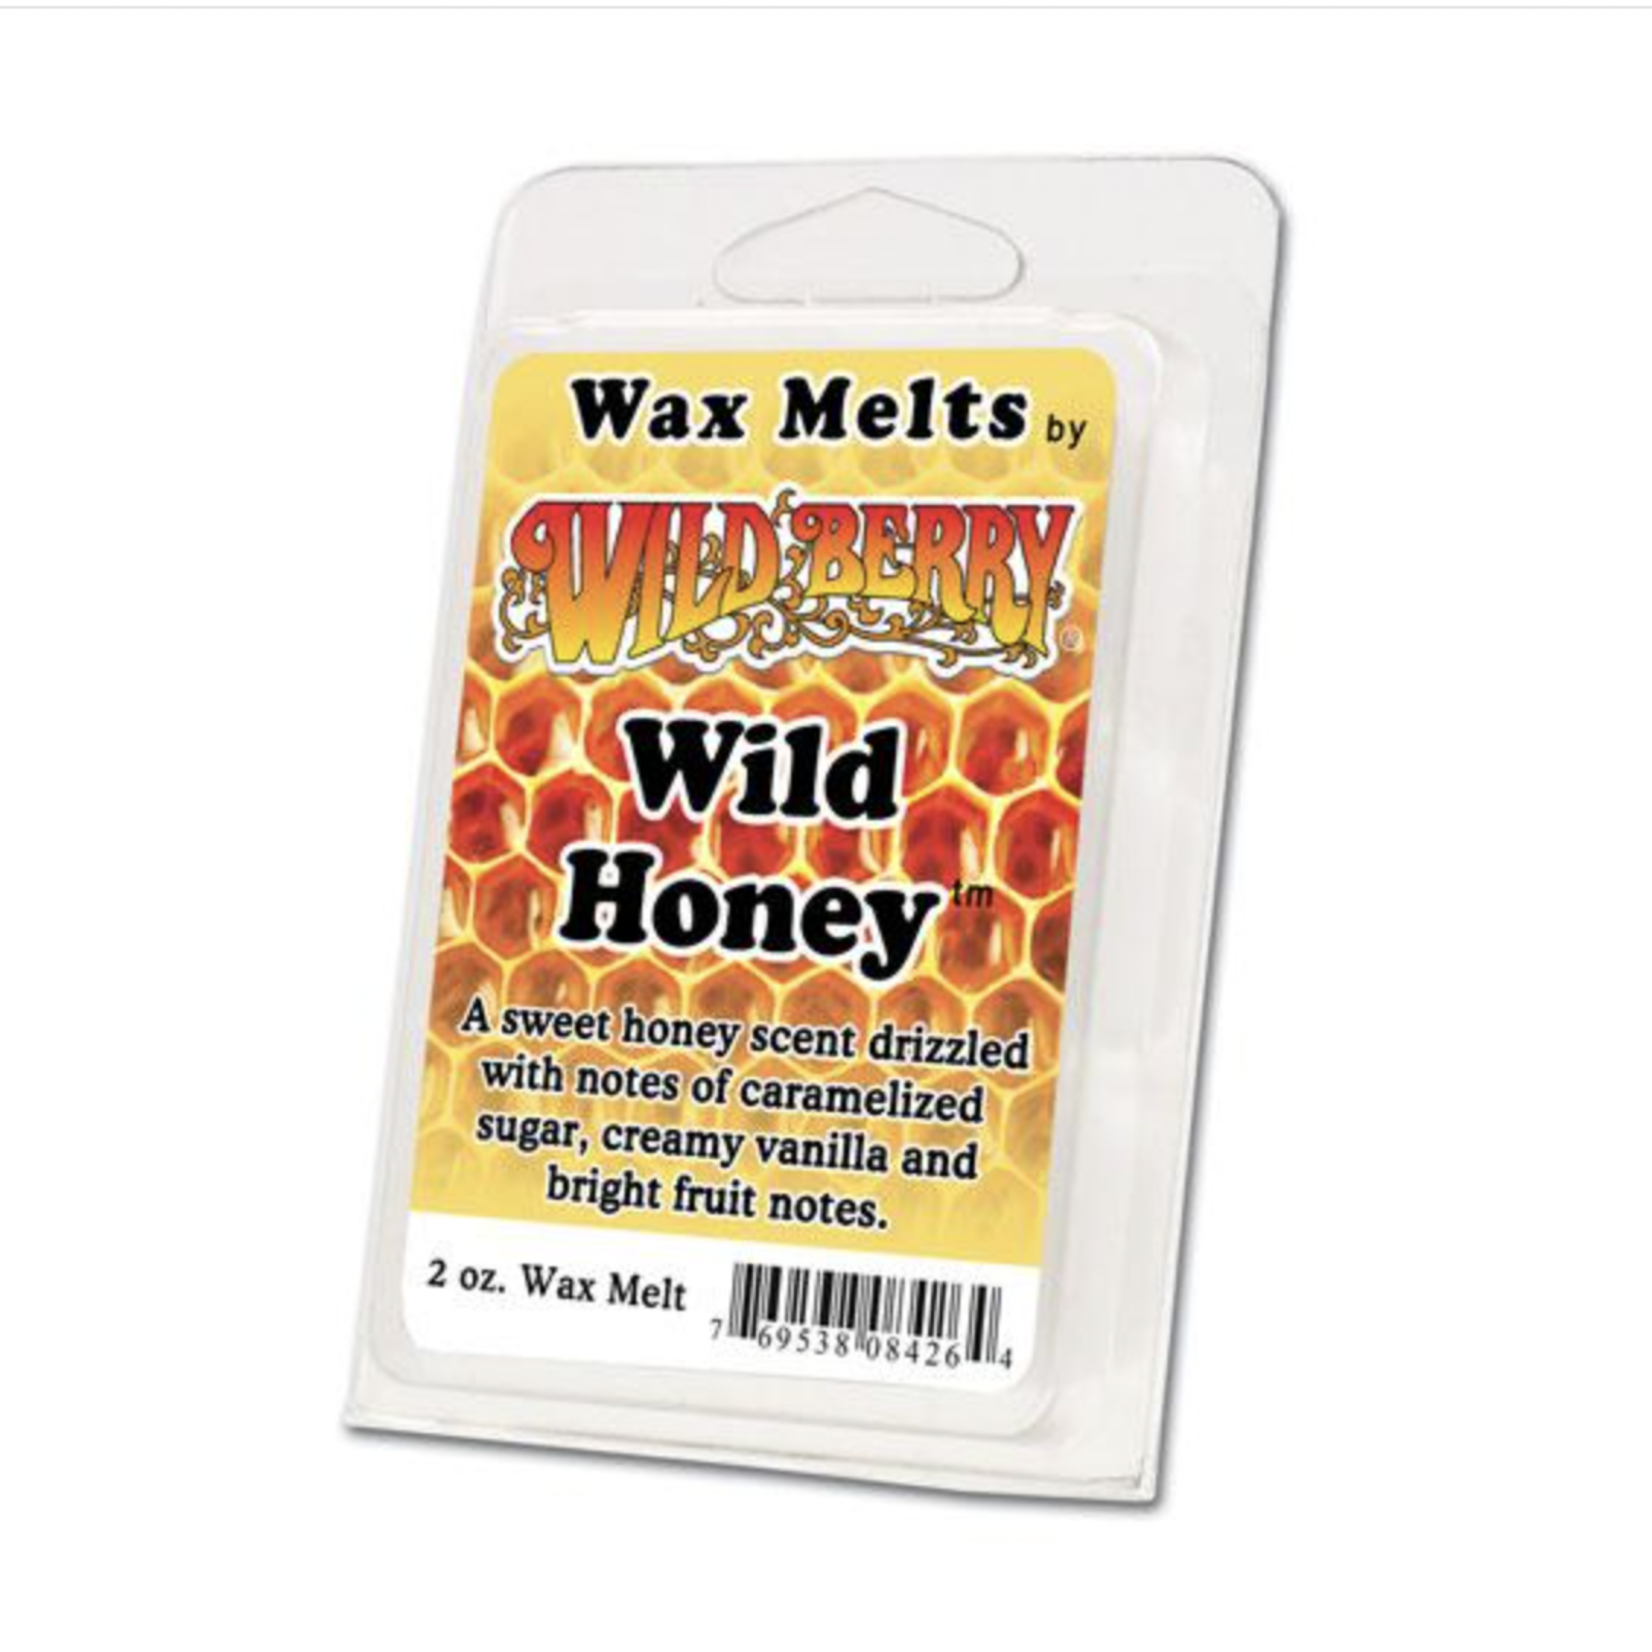 WILDBERRY Wildberry Wax Melts Wild Honey